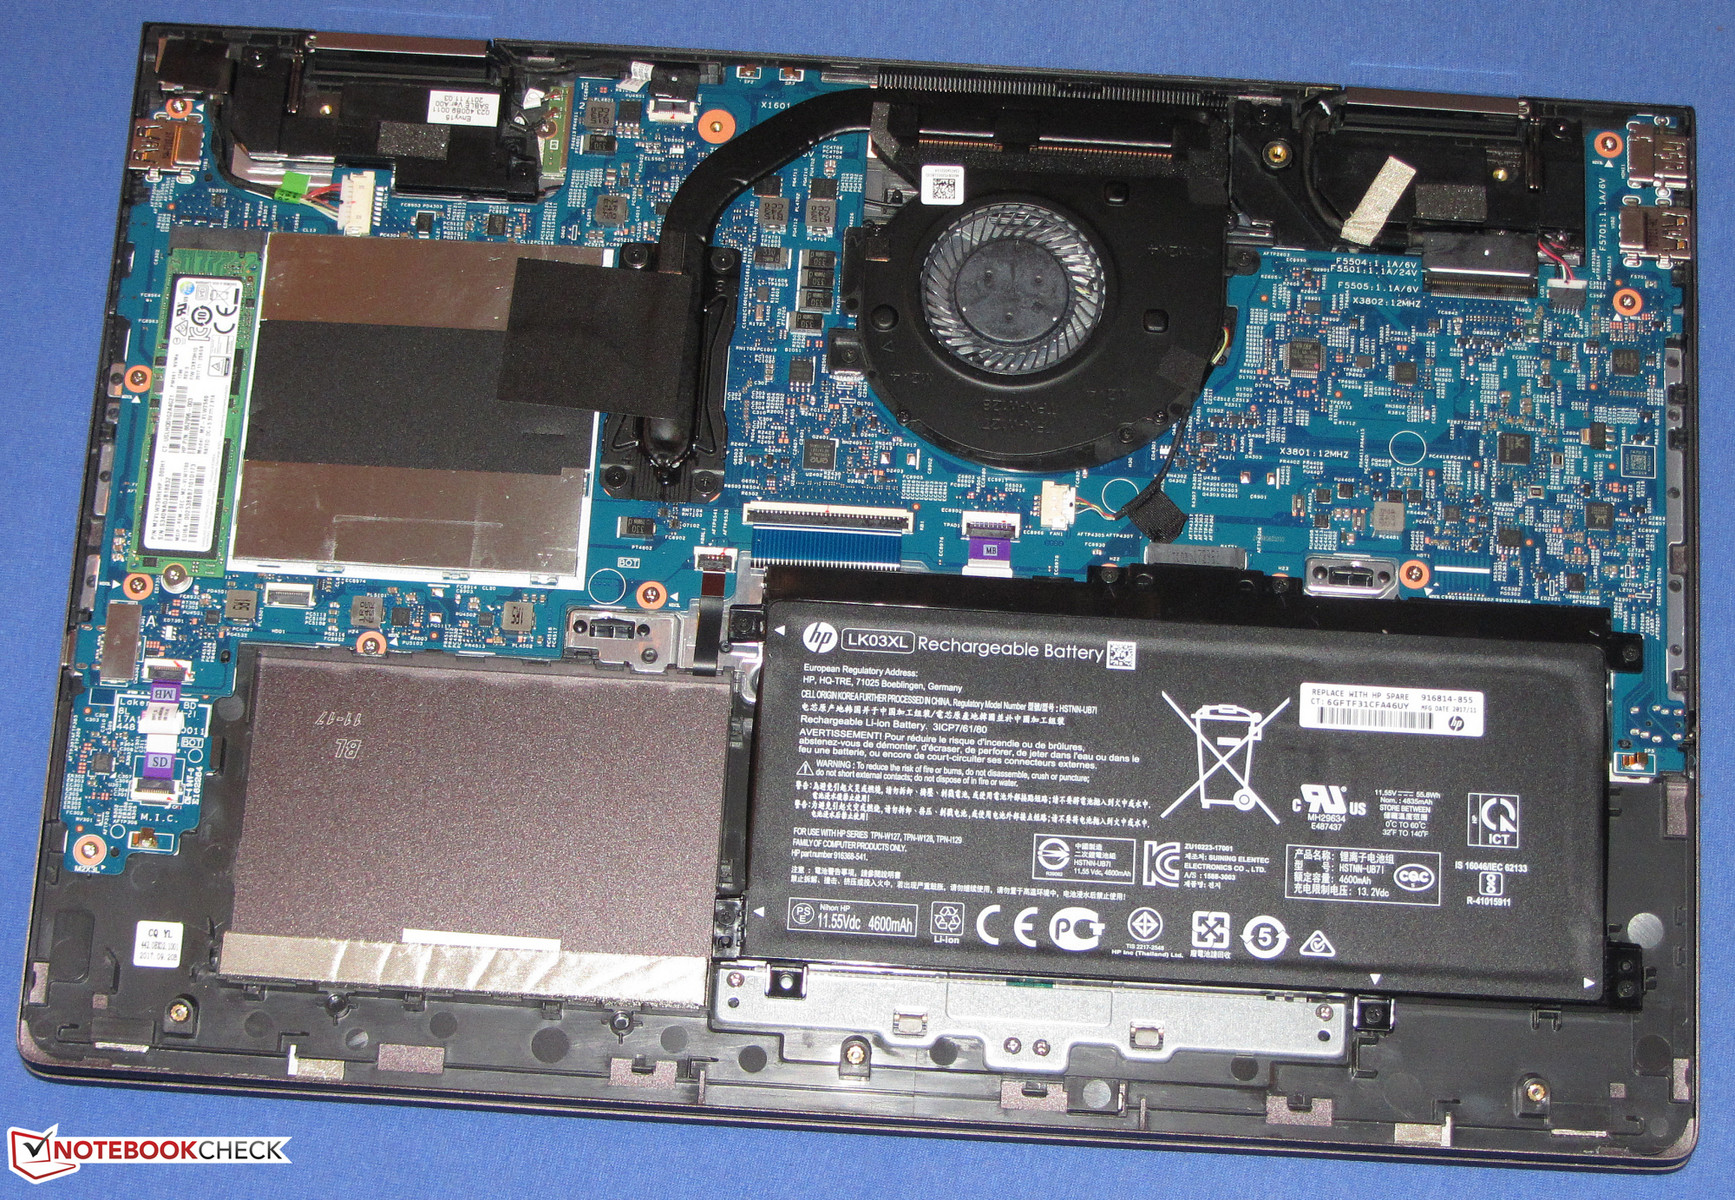 HP Envy x360 15z (Ryzen 5 2500U, Vega 8, SSD, FHD) Convertible Review ...